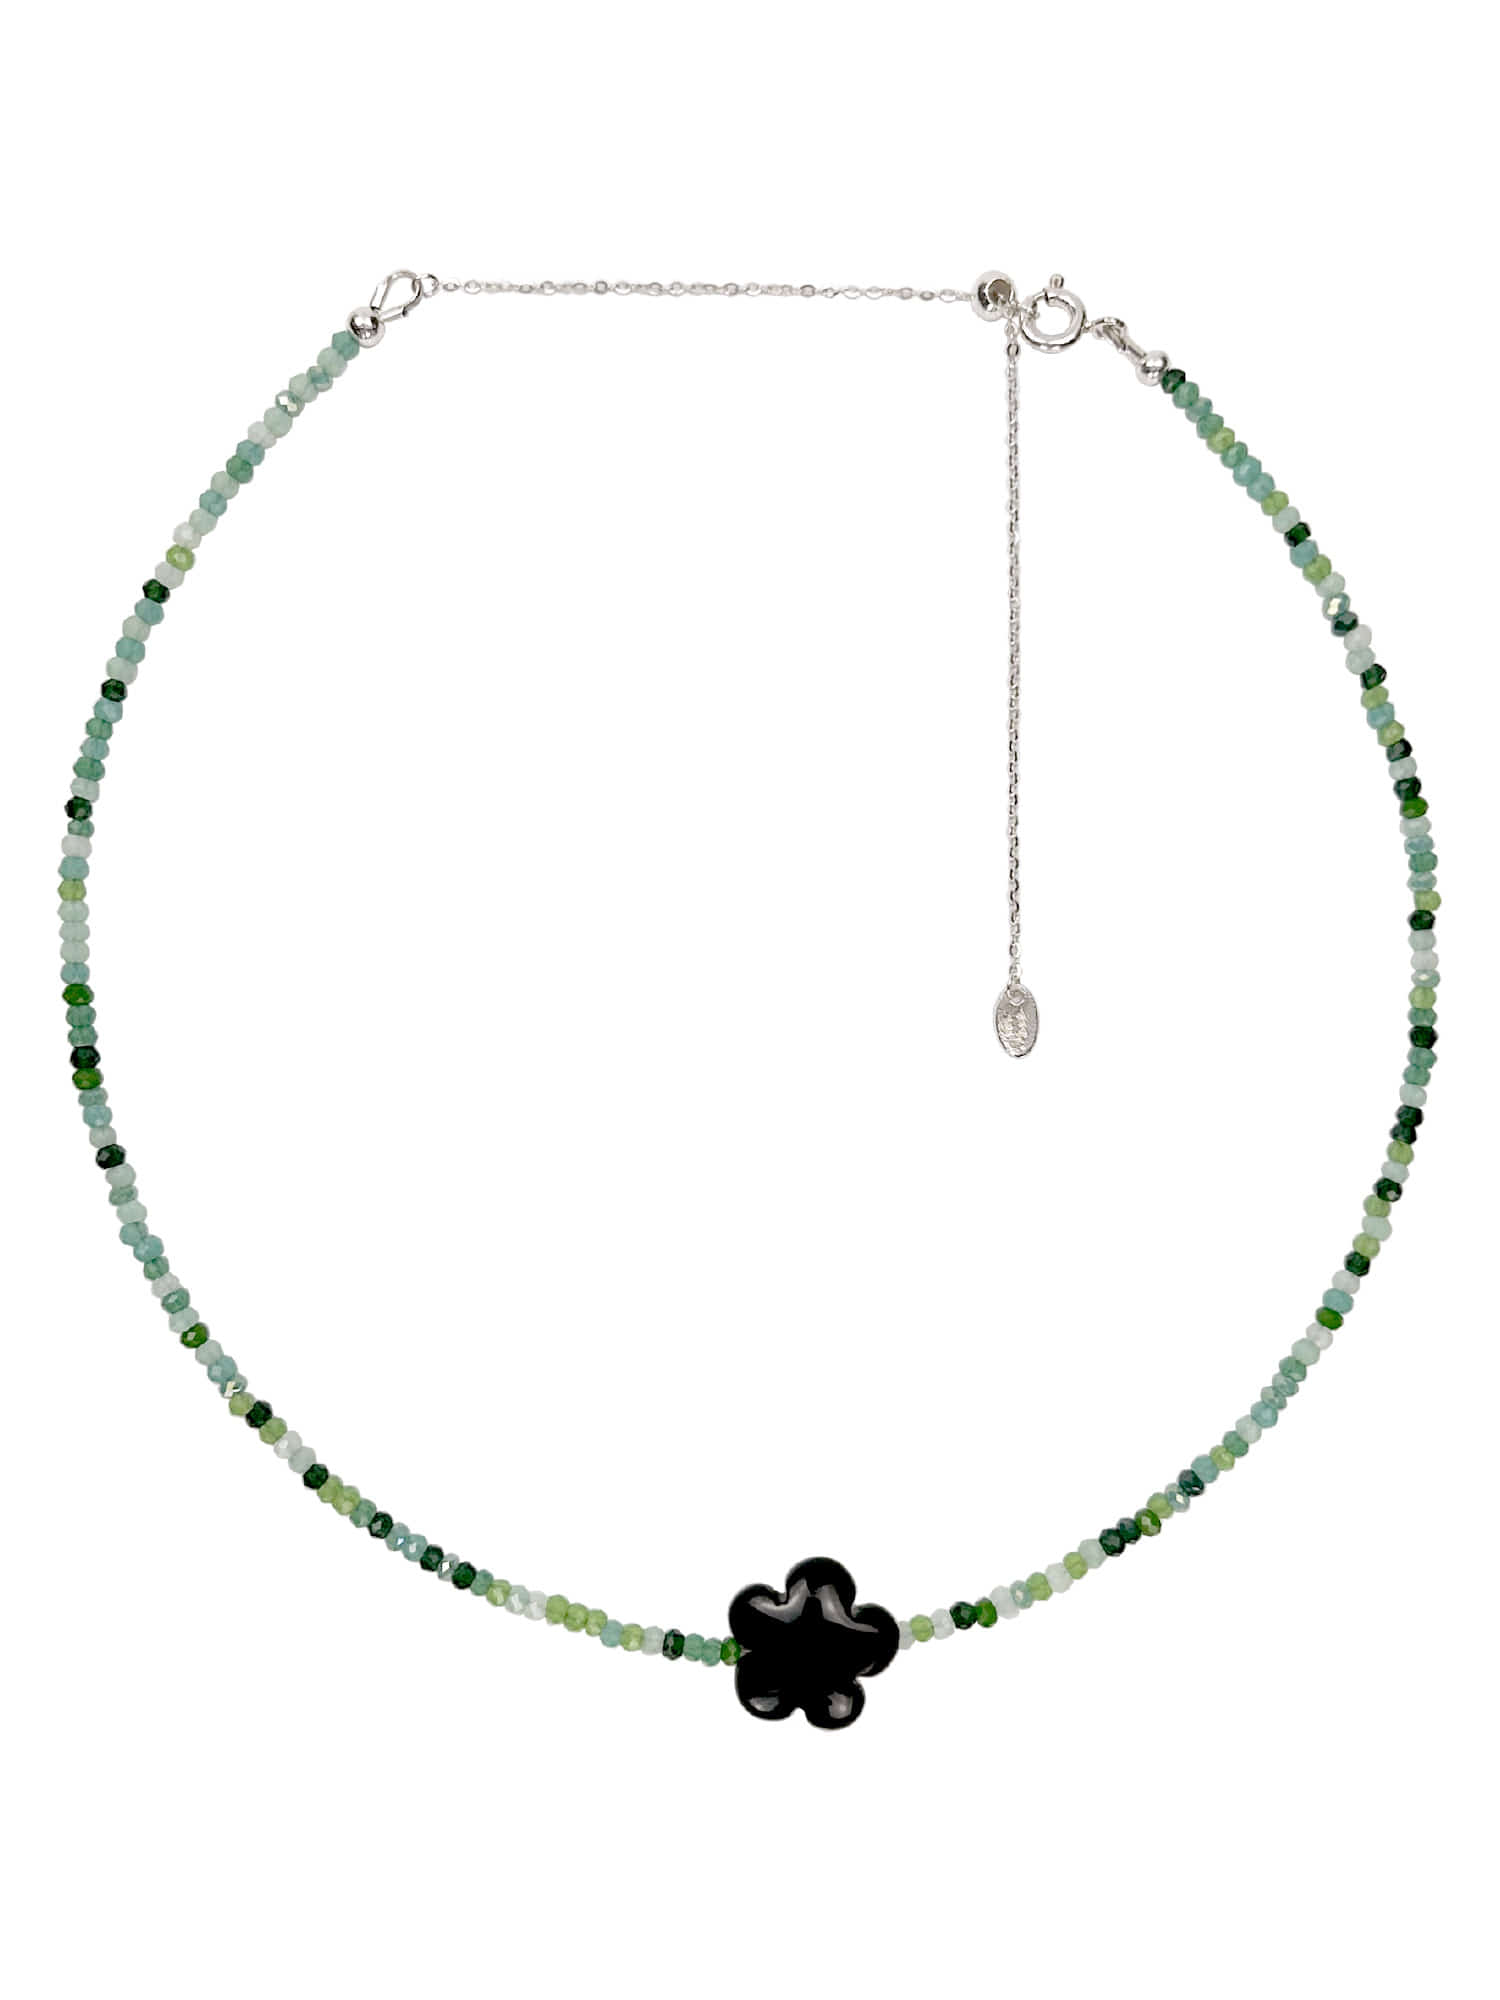 Maldives Beads Necklace (Palmtree)